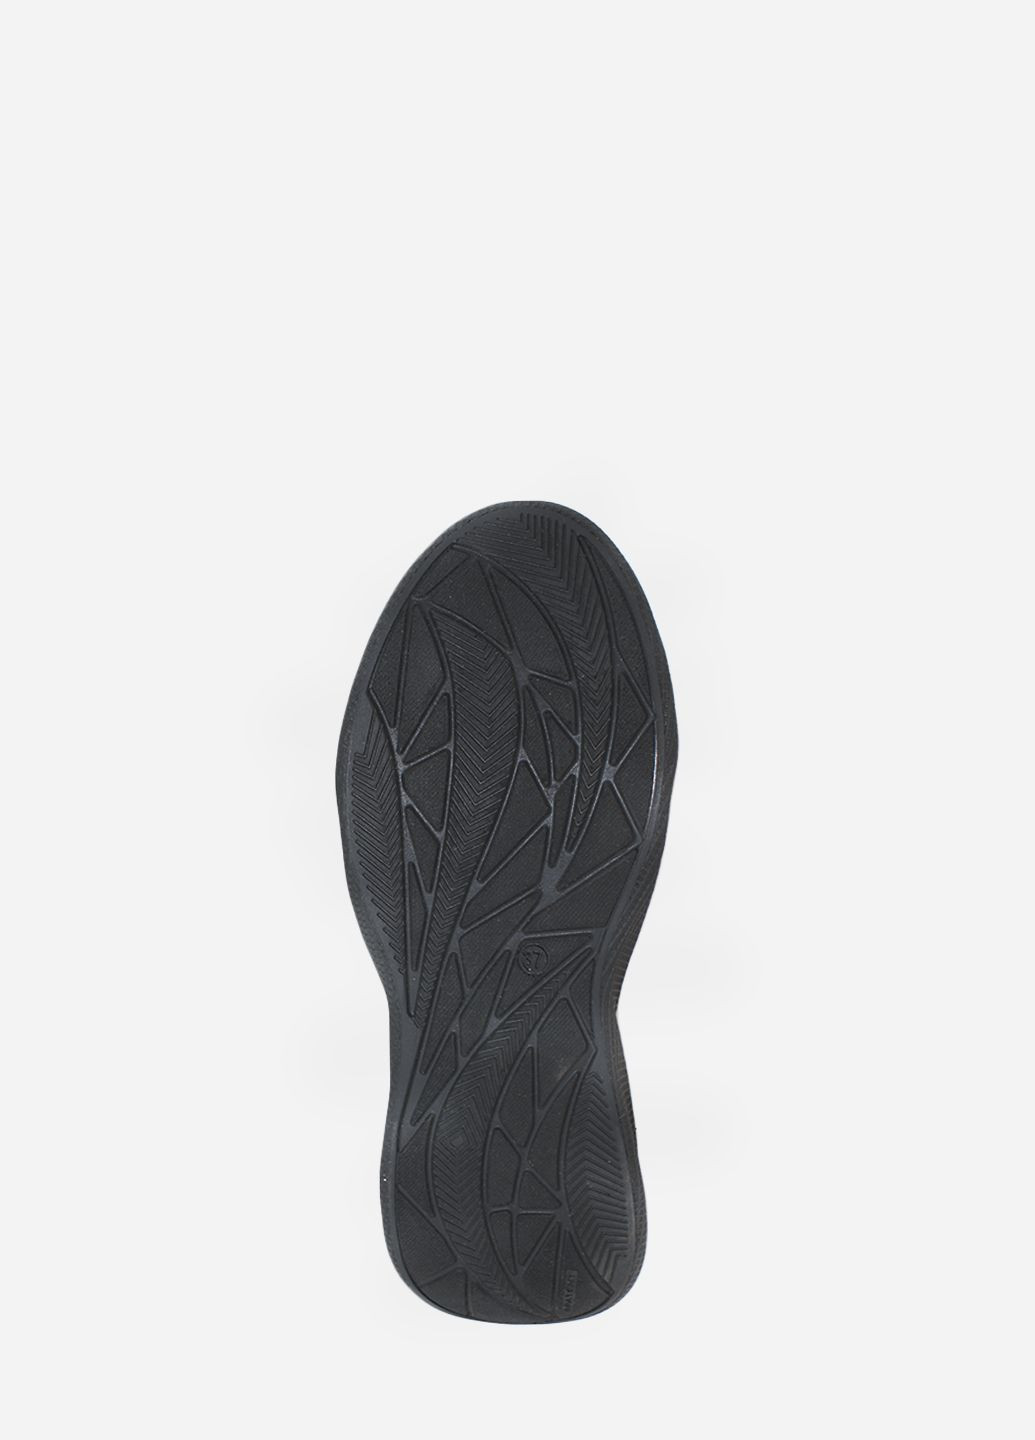 Черные демисезонные кроссовки rvk98-5 черный Vialana